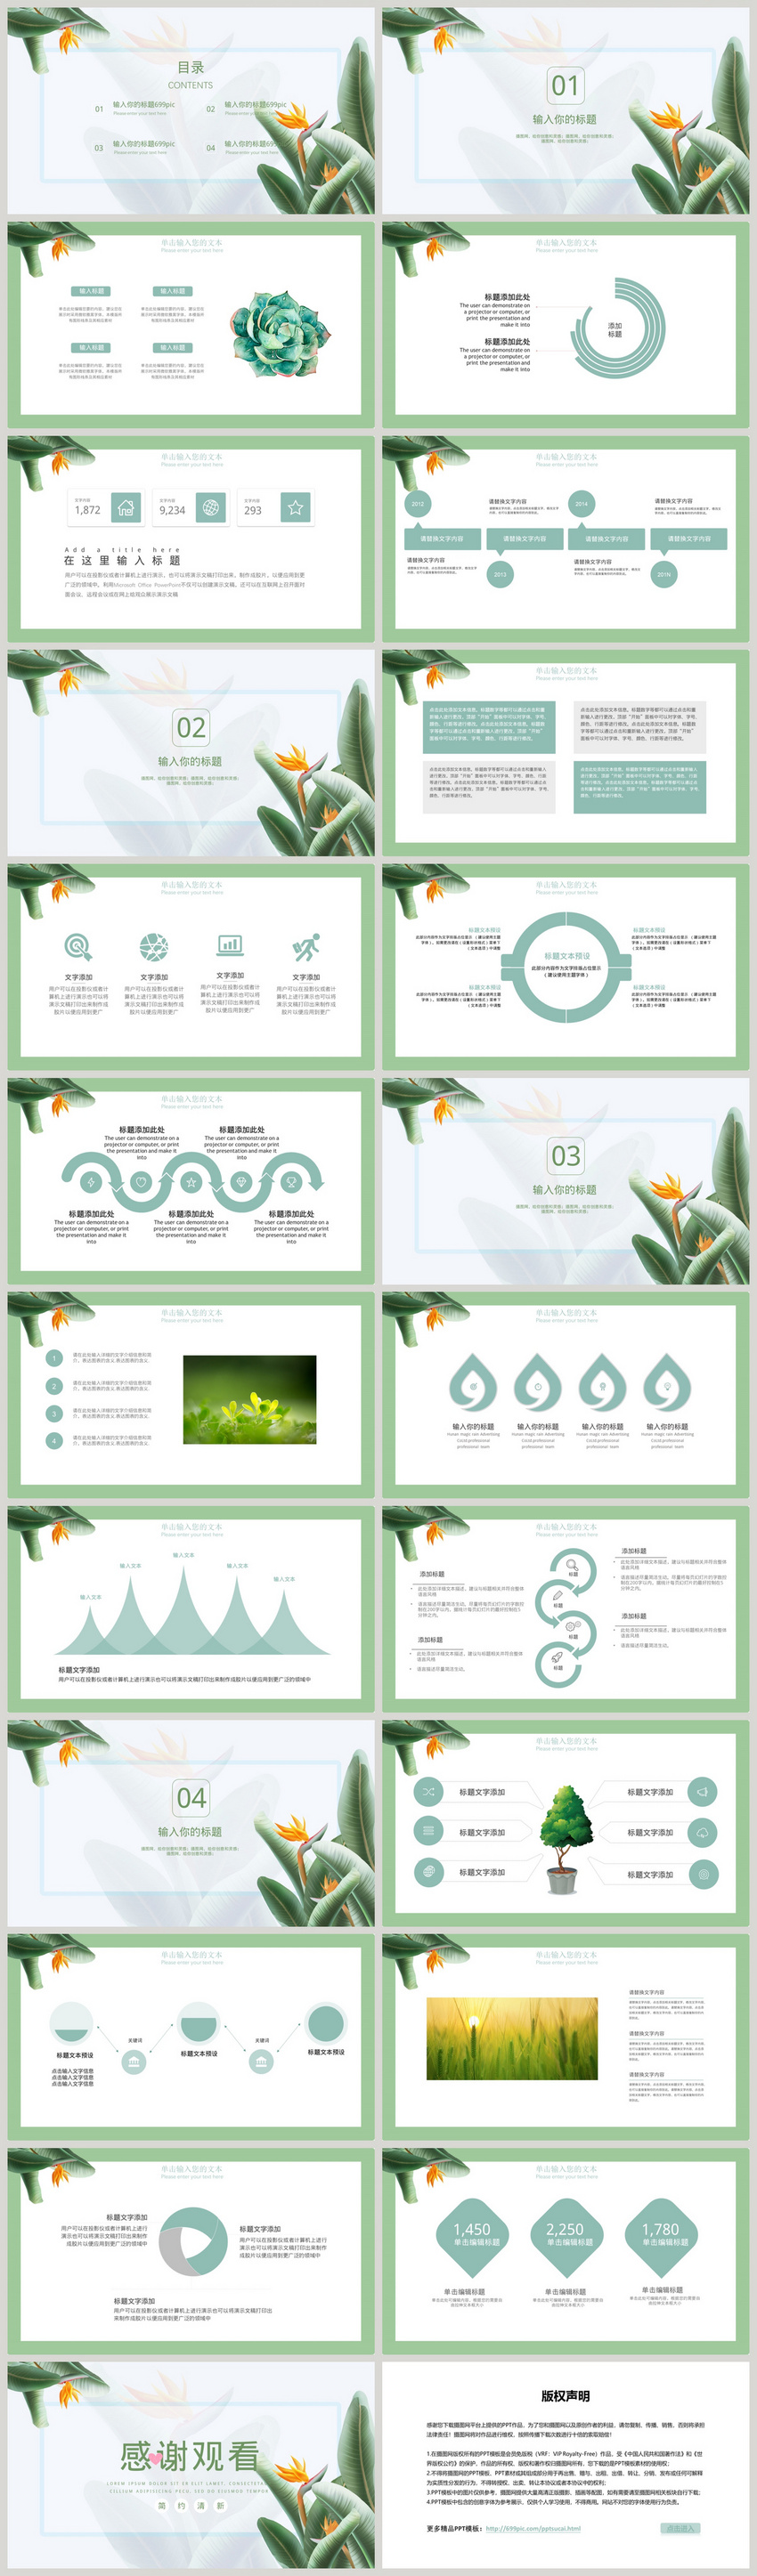 Mẫu powerpoint màu xanh lá cây nào đẹp và phù hợp cho thuyết trình về đề tài liên quan đến môi trường?